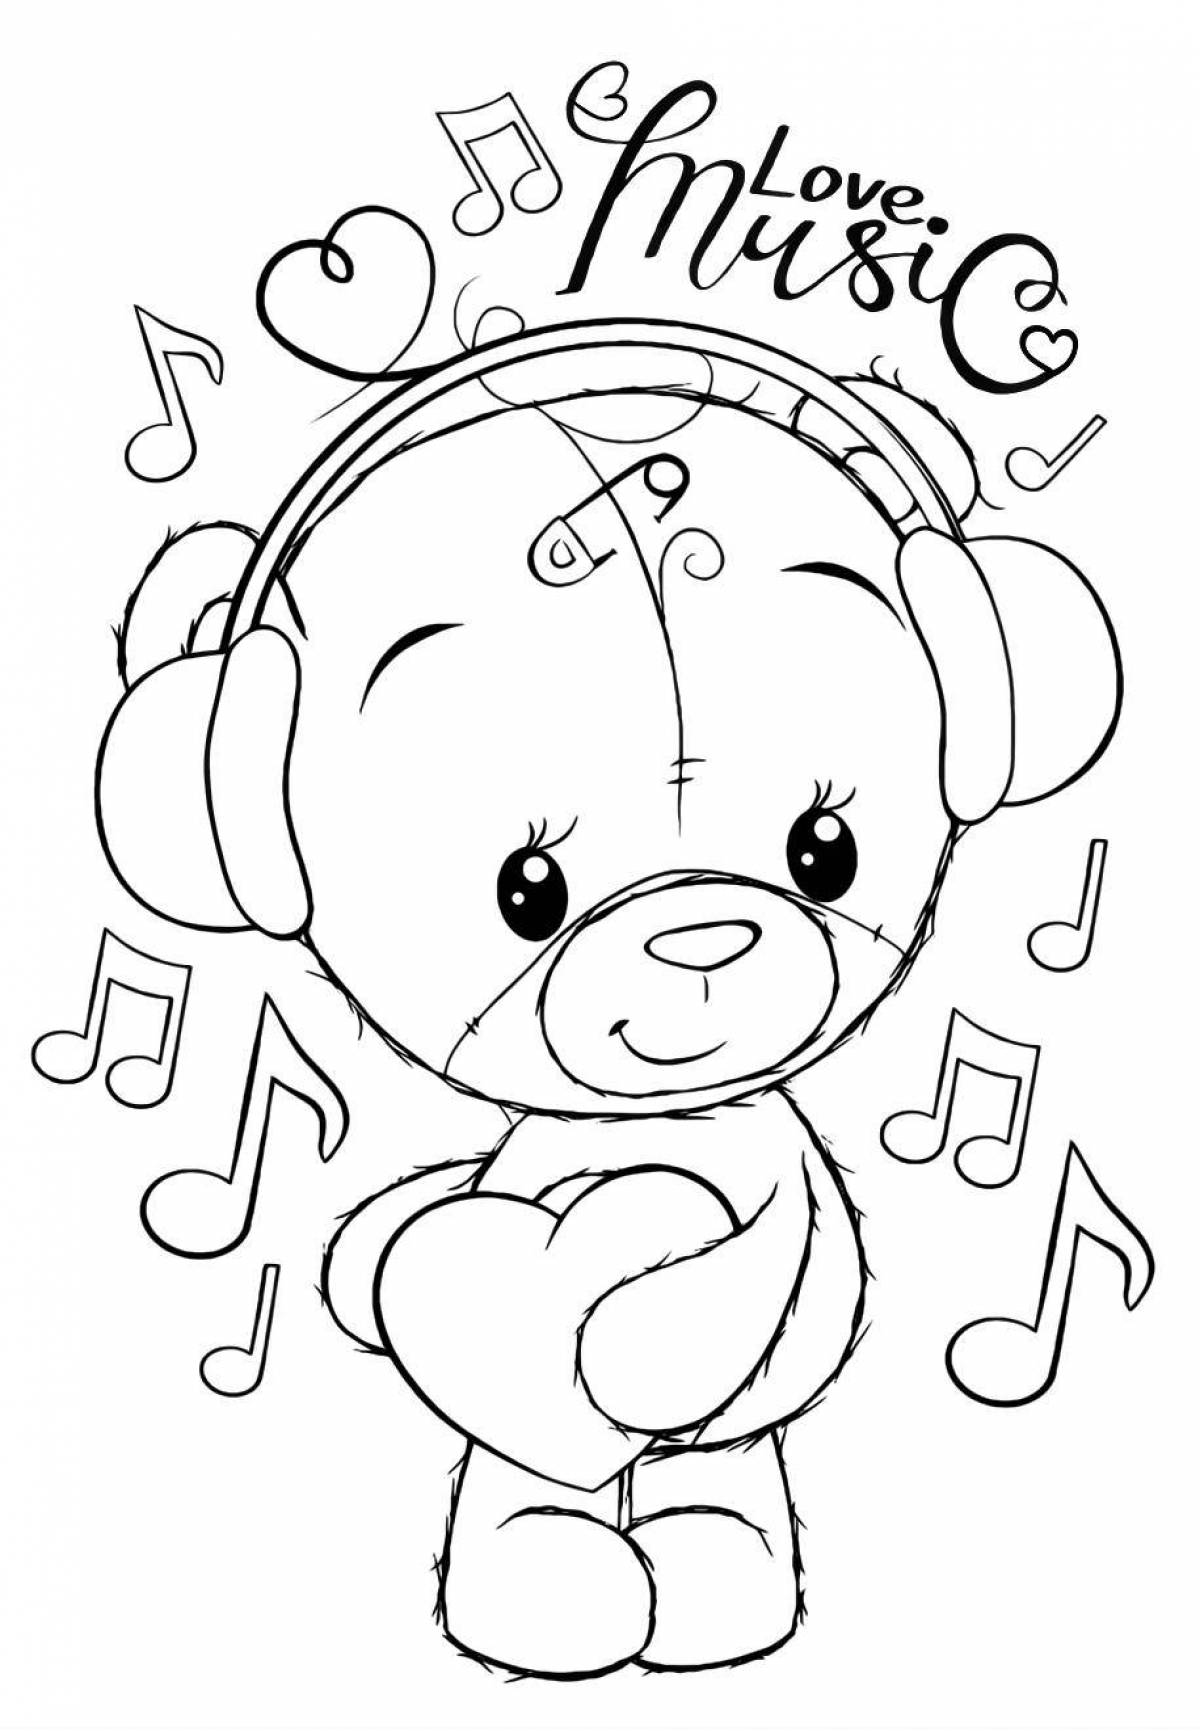 Joyful cute teddy bear coloring book